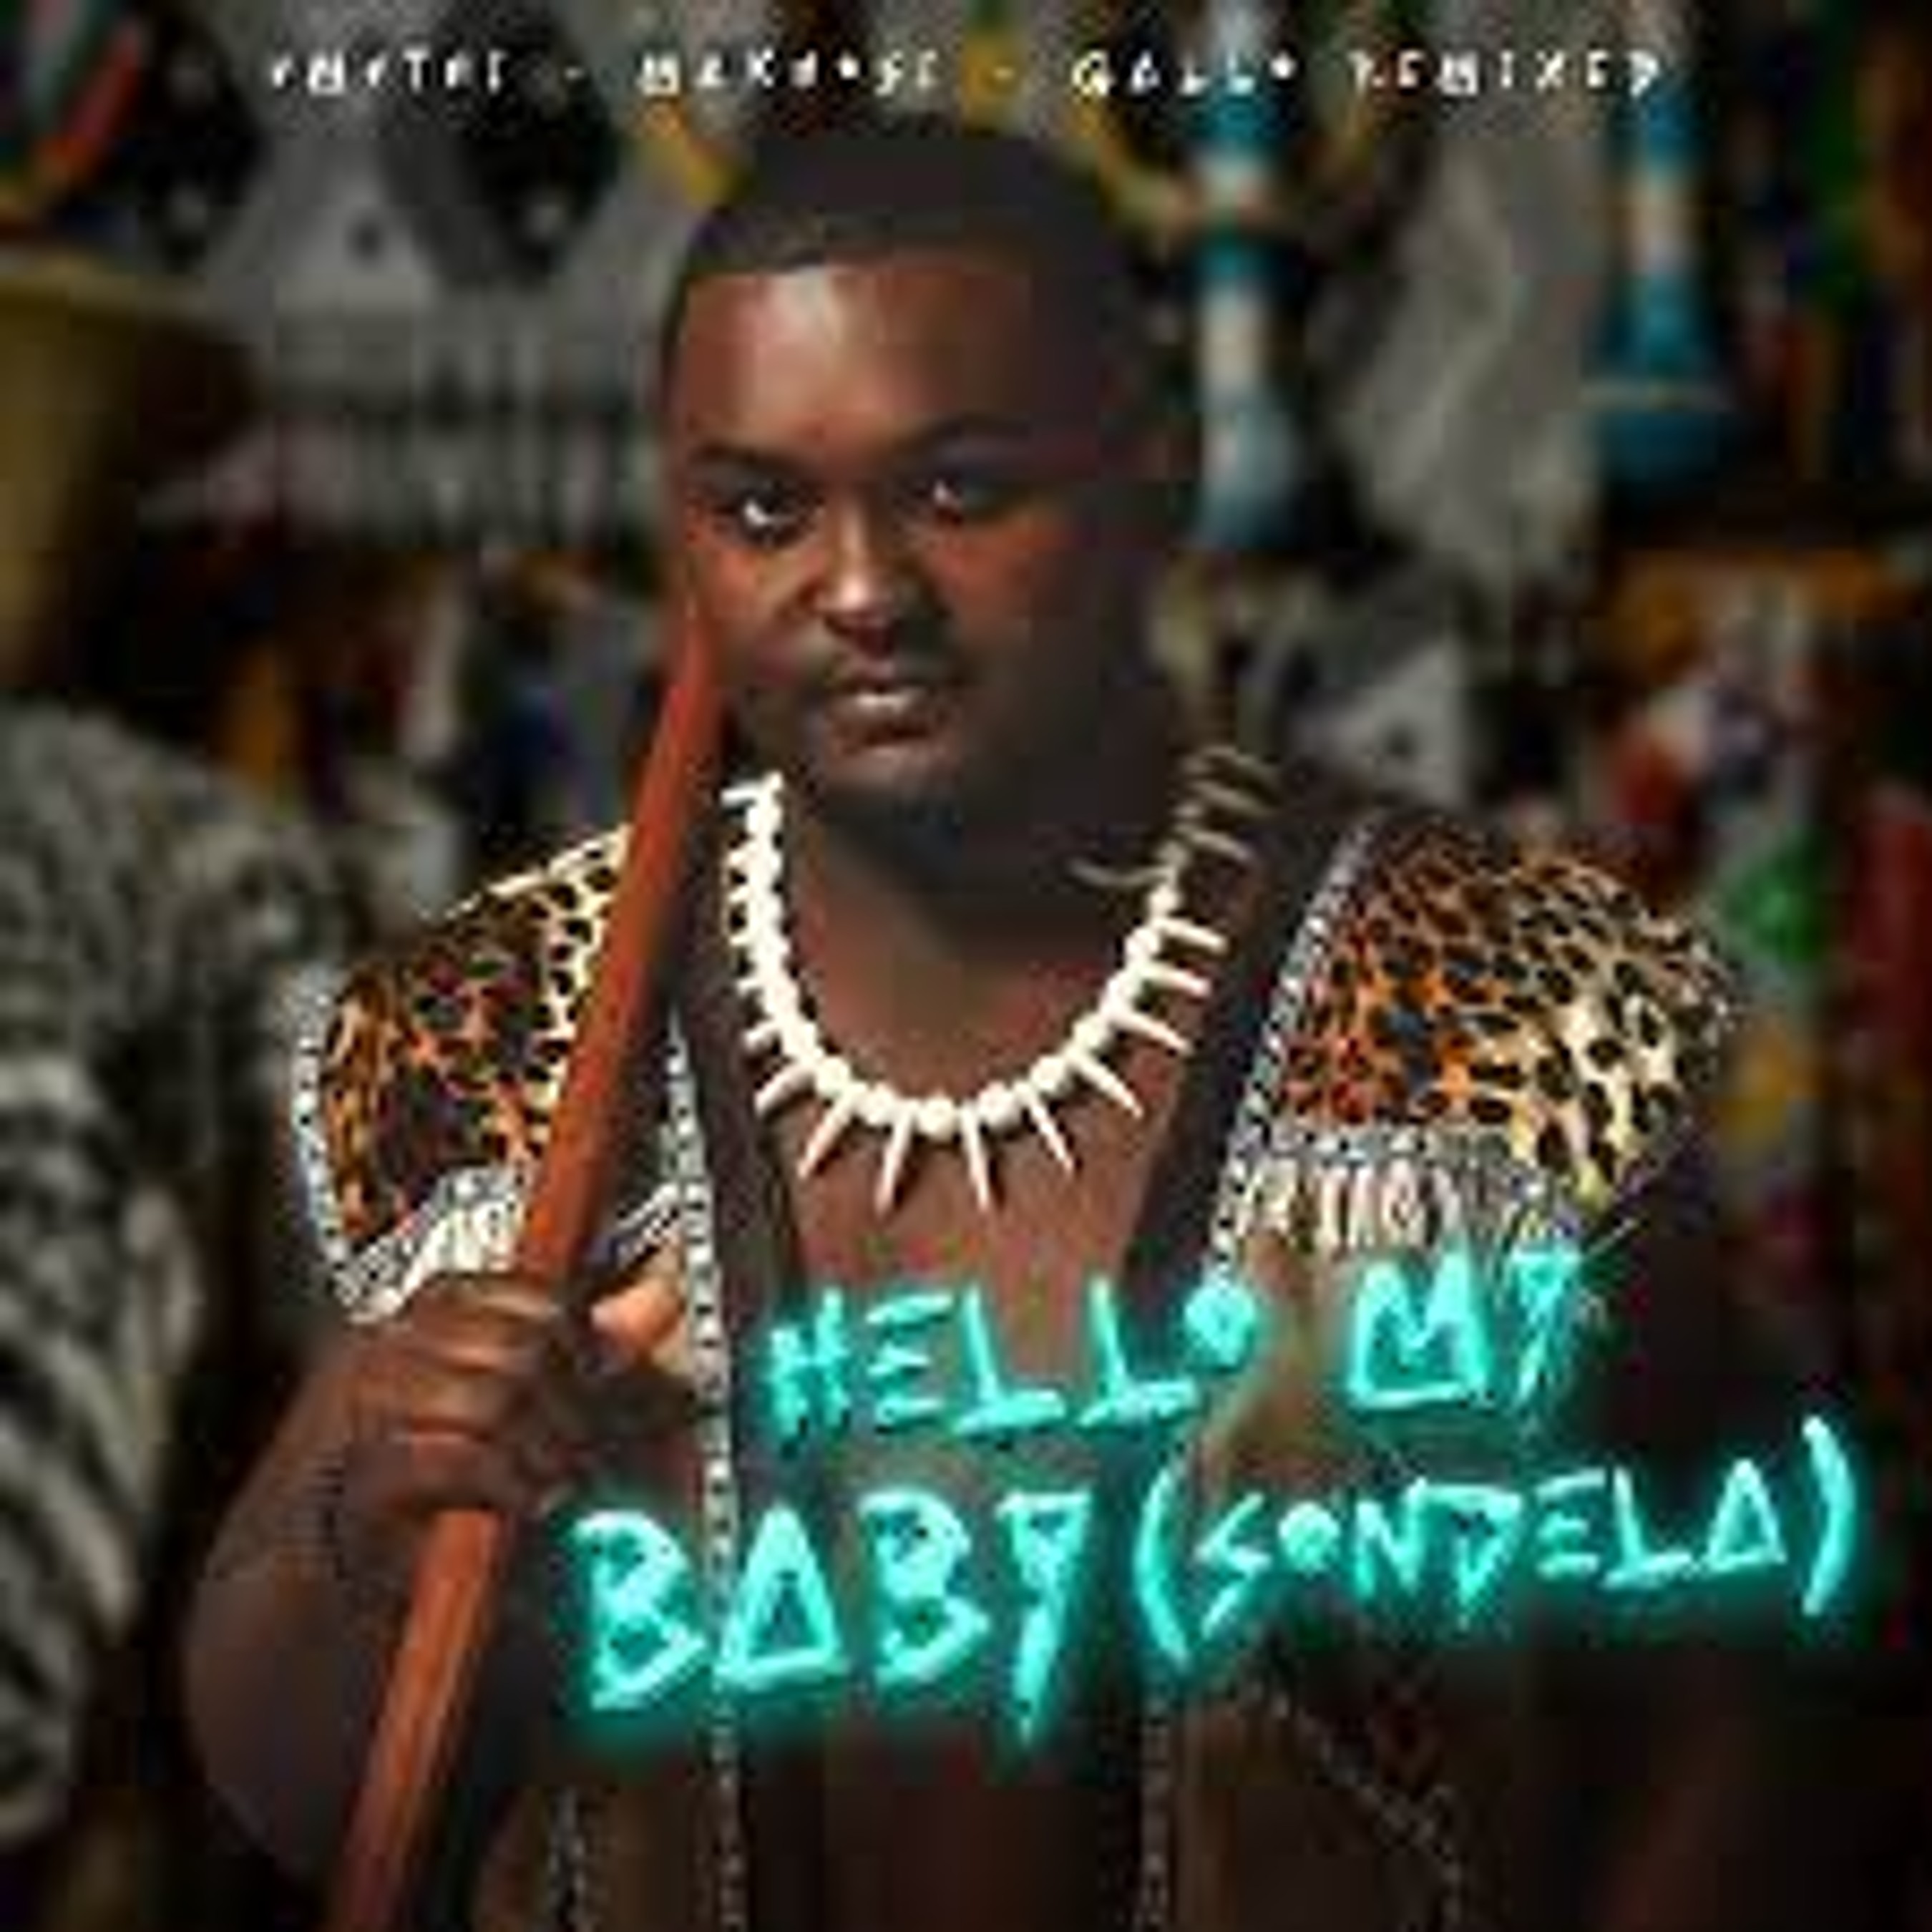 UMUTHI & Makhosi – Hello My Baby (Sondela) [Gallo Remixed] Mp3 Download Fakaza: U